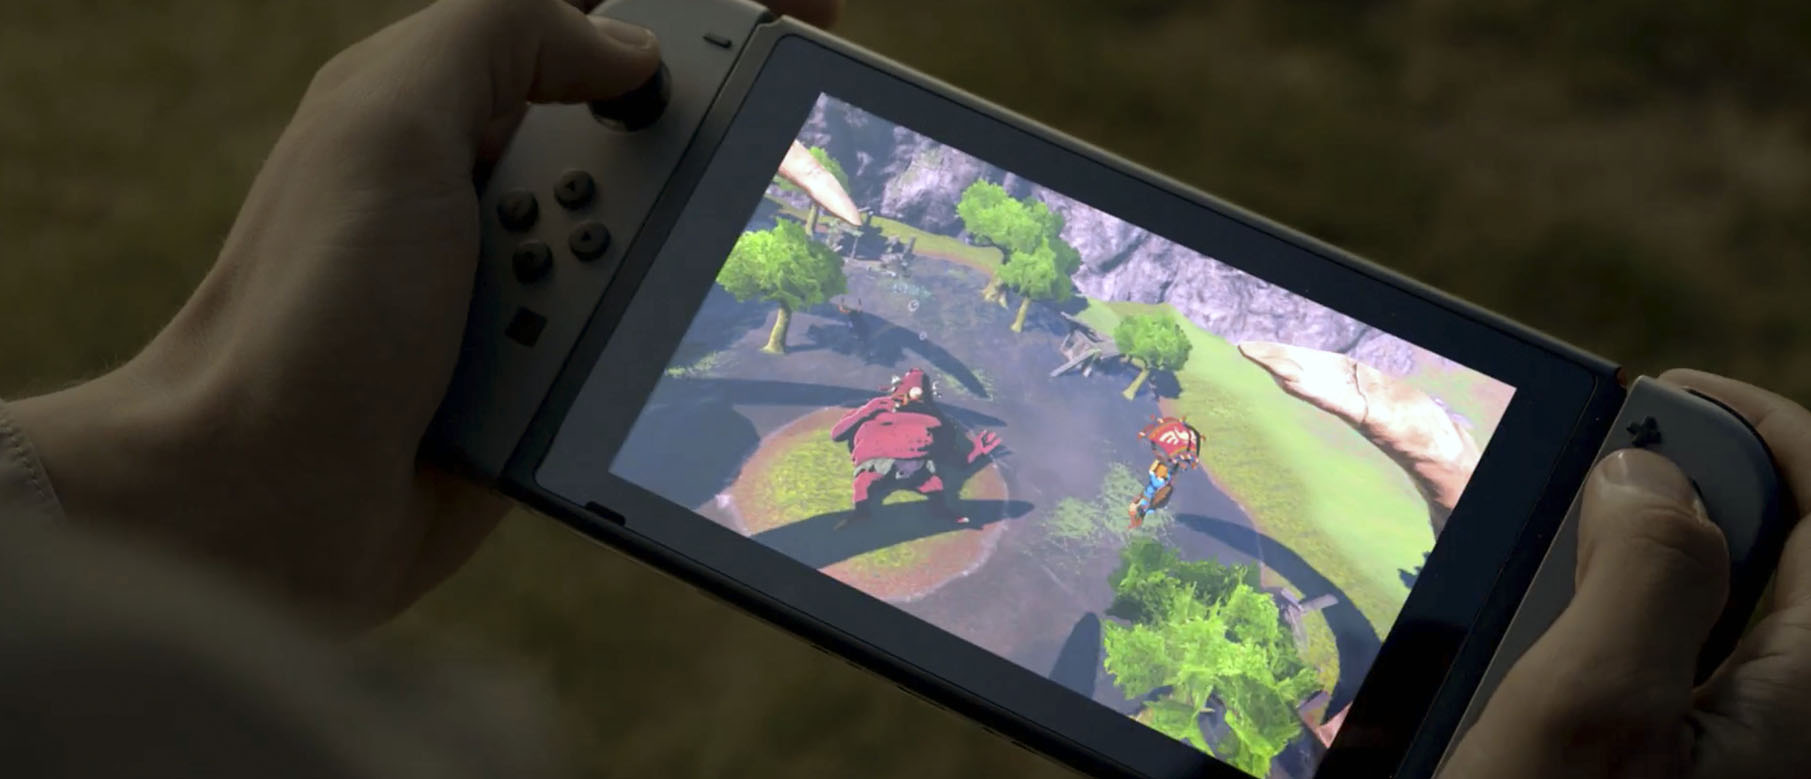 Изображение к Презентация Nintendo Switch в прямом эфире